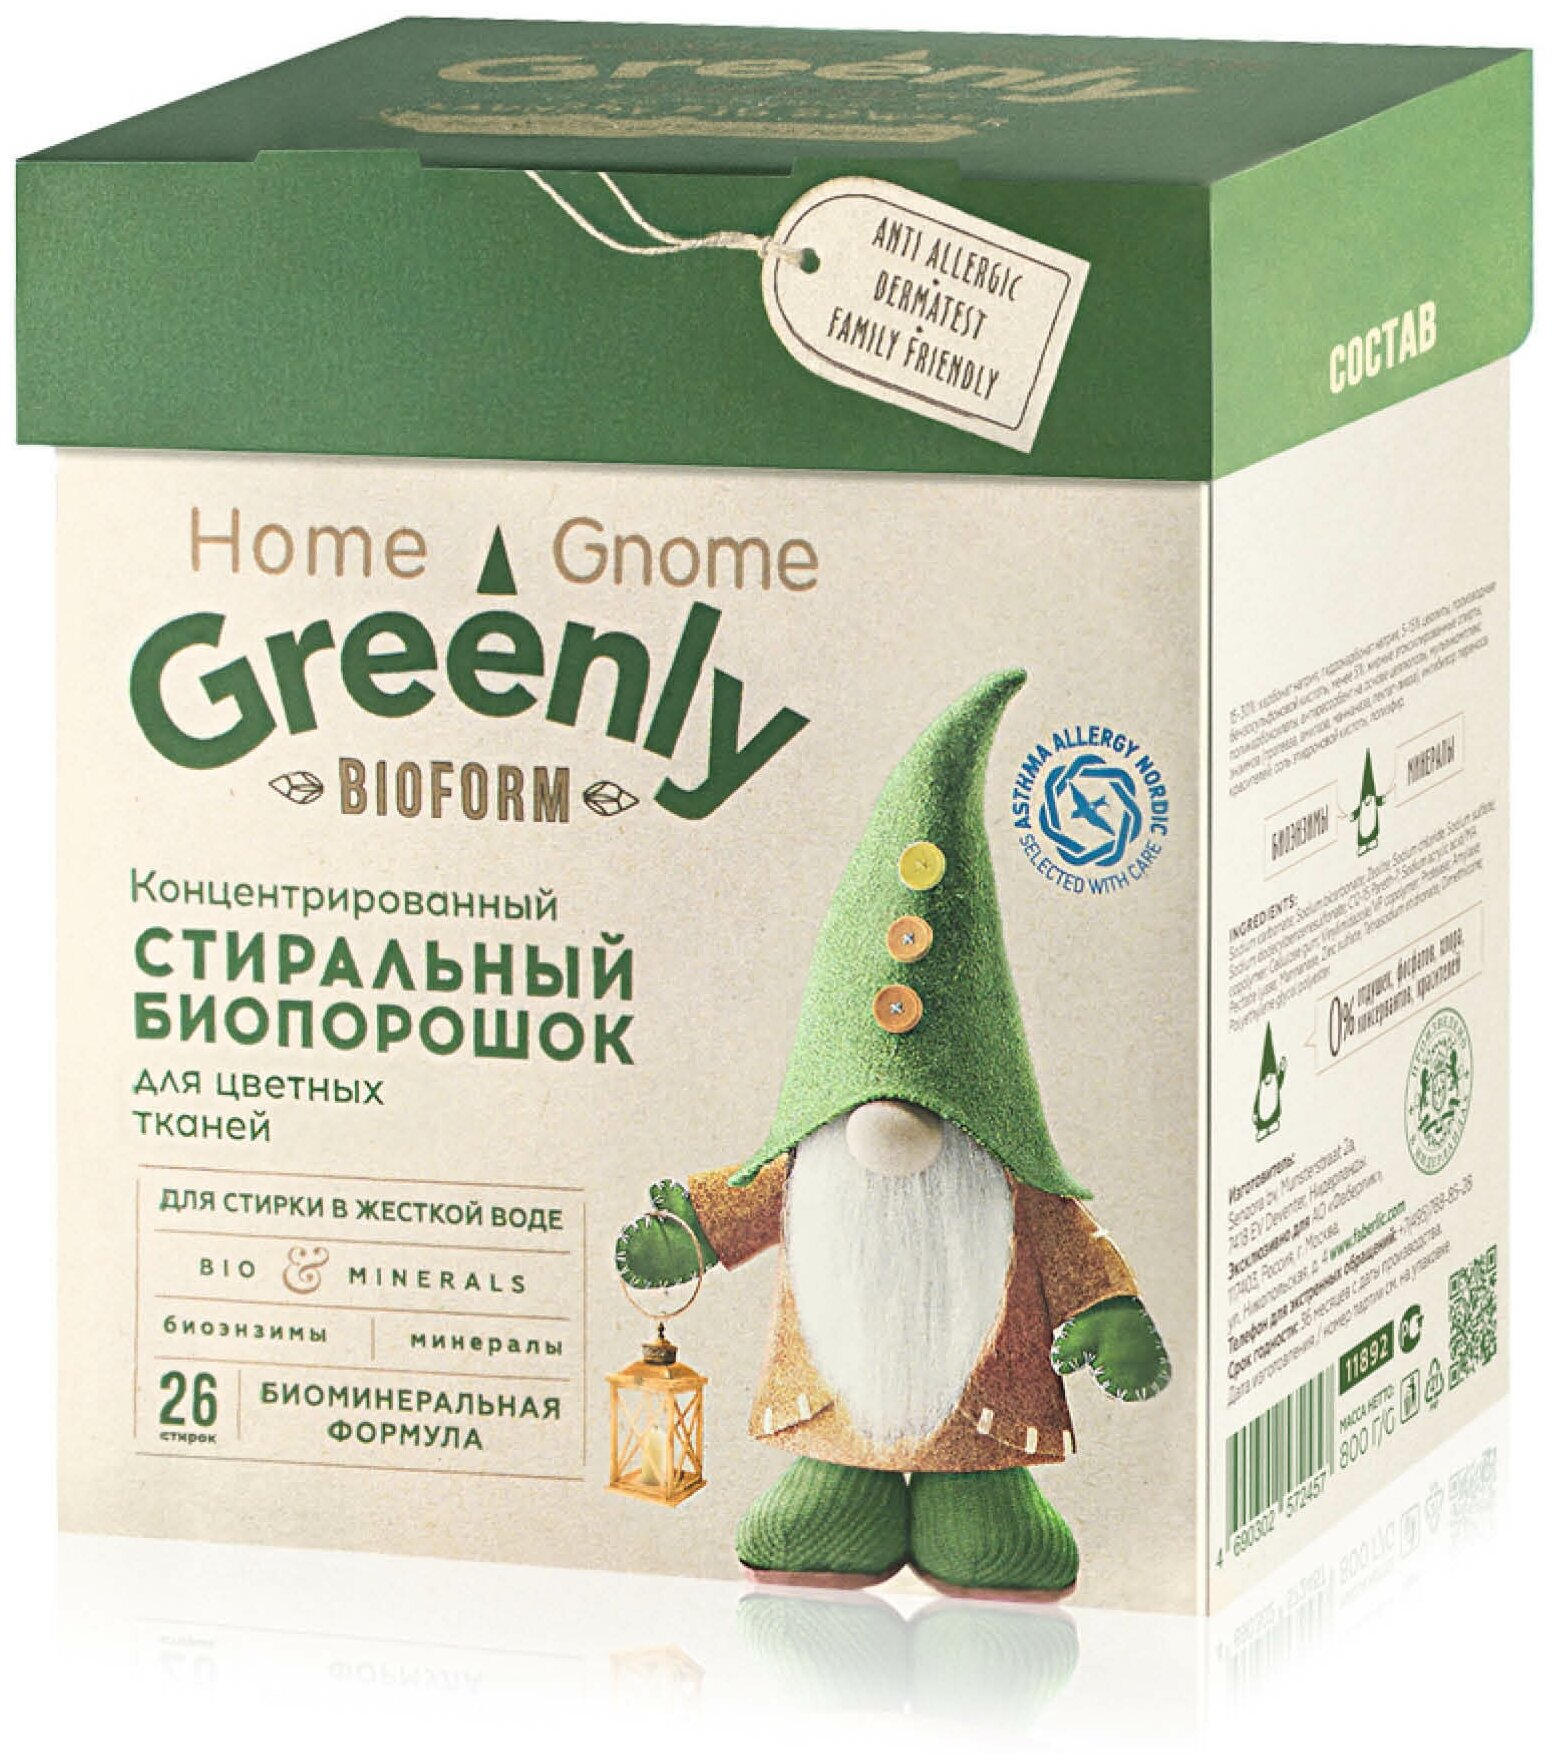 Faberlic Концентрированный стиральный биопорошок для цветных тканей серии Home Gnome Greenly, 800 г, 26 стирок